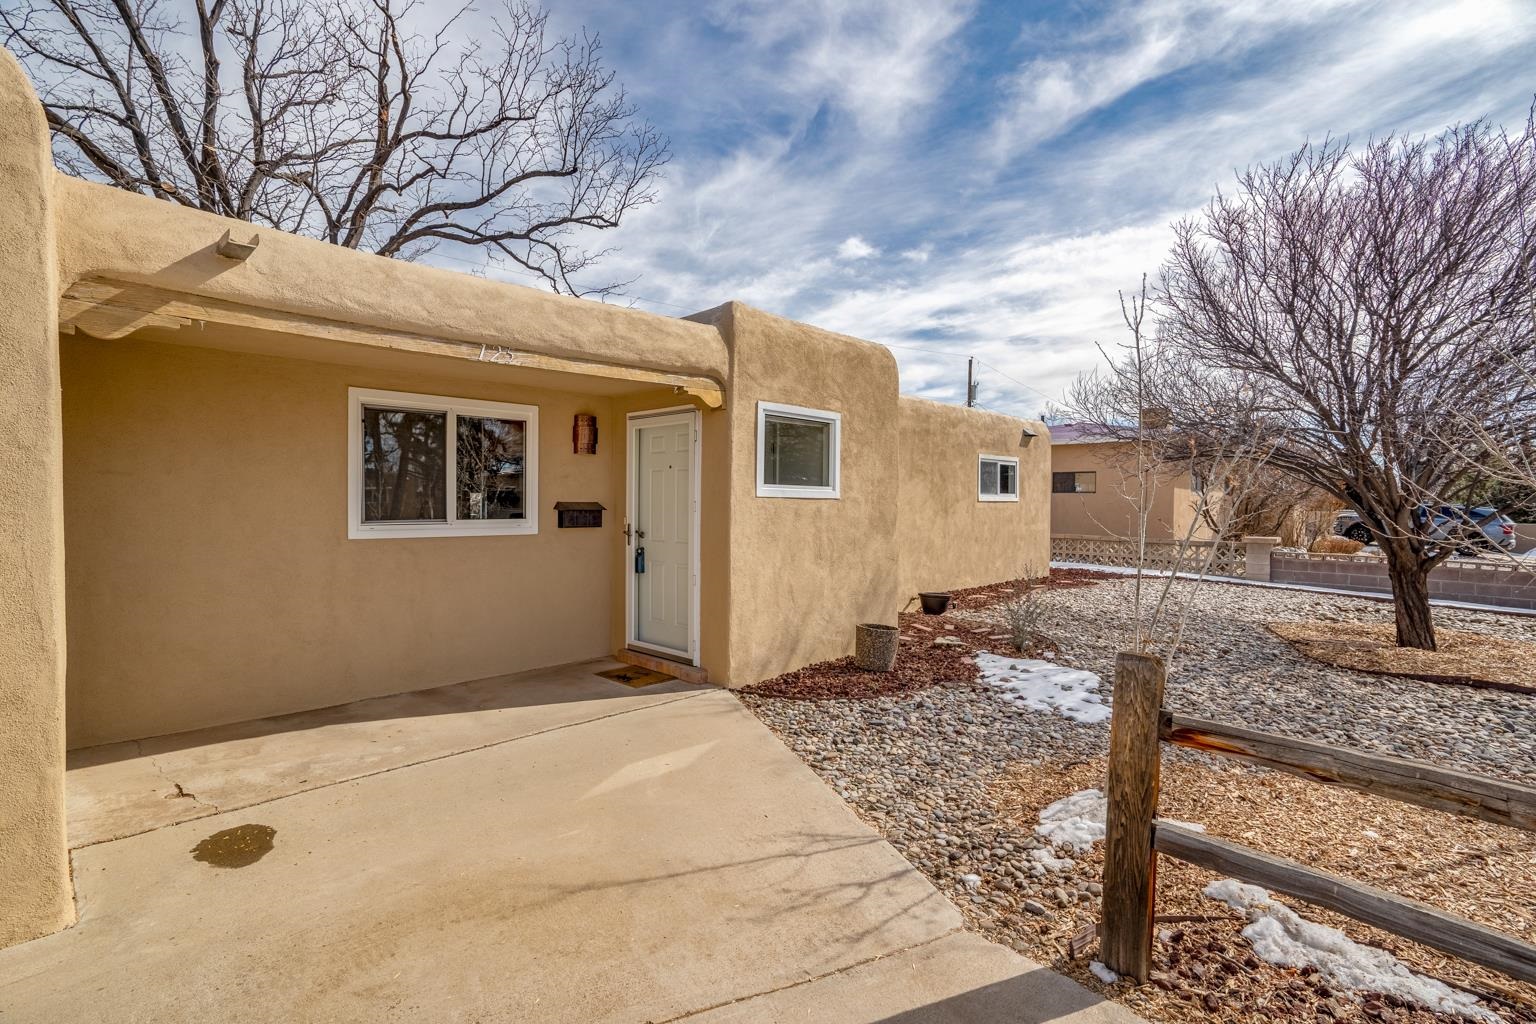 125 Cedar, Santa Fe, New Mexico 87501, 3 Bedrooms Bedrooms, ,1 BathroomBathrooms,Residential,For Sale,125 Cedar,202200409